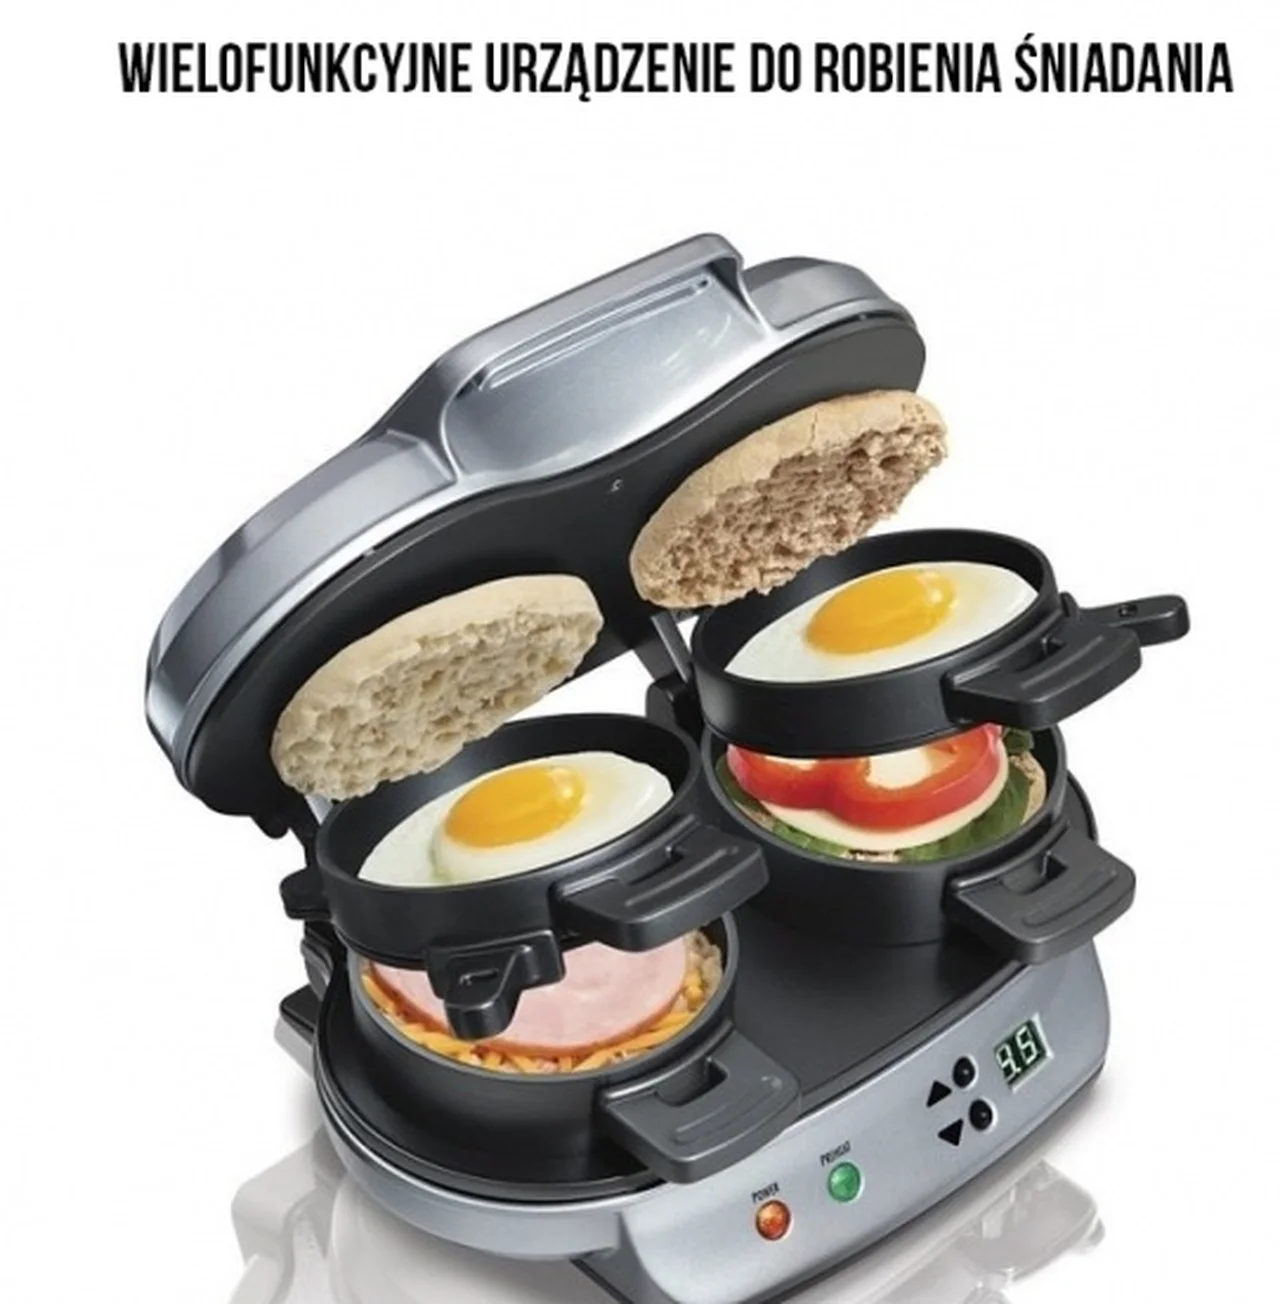 Wielofunkcyjne urządzenie do robienia śniadania